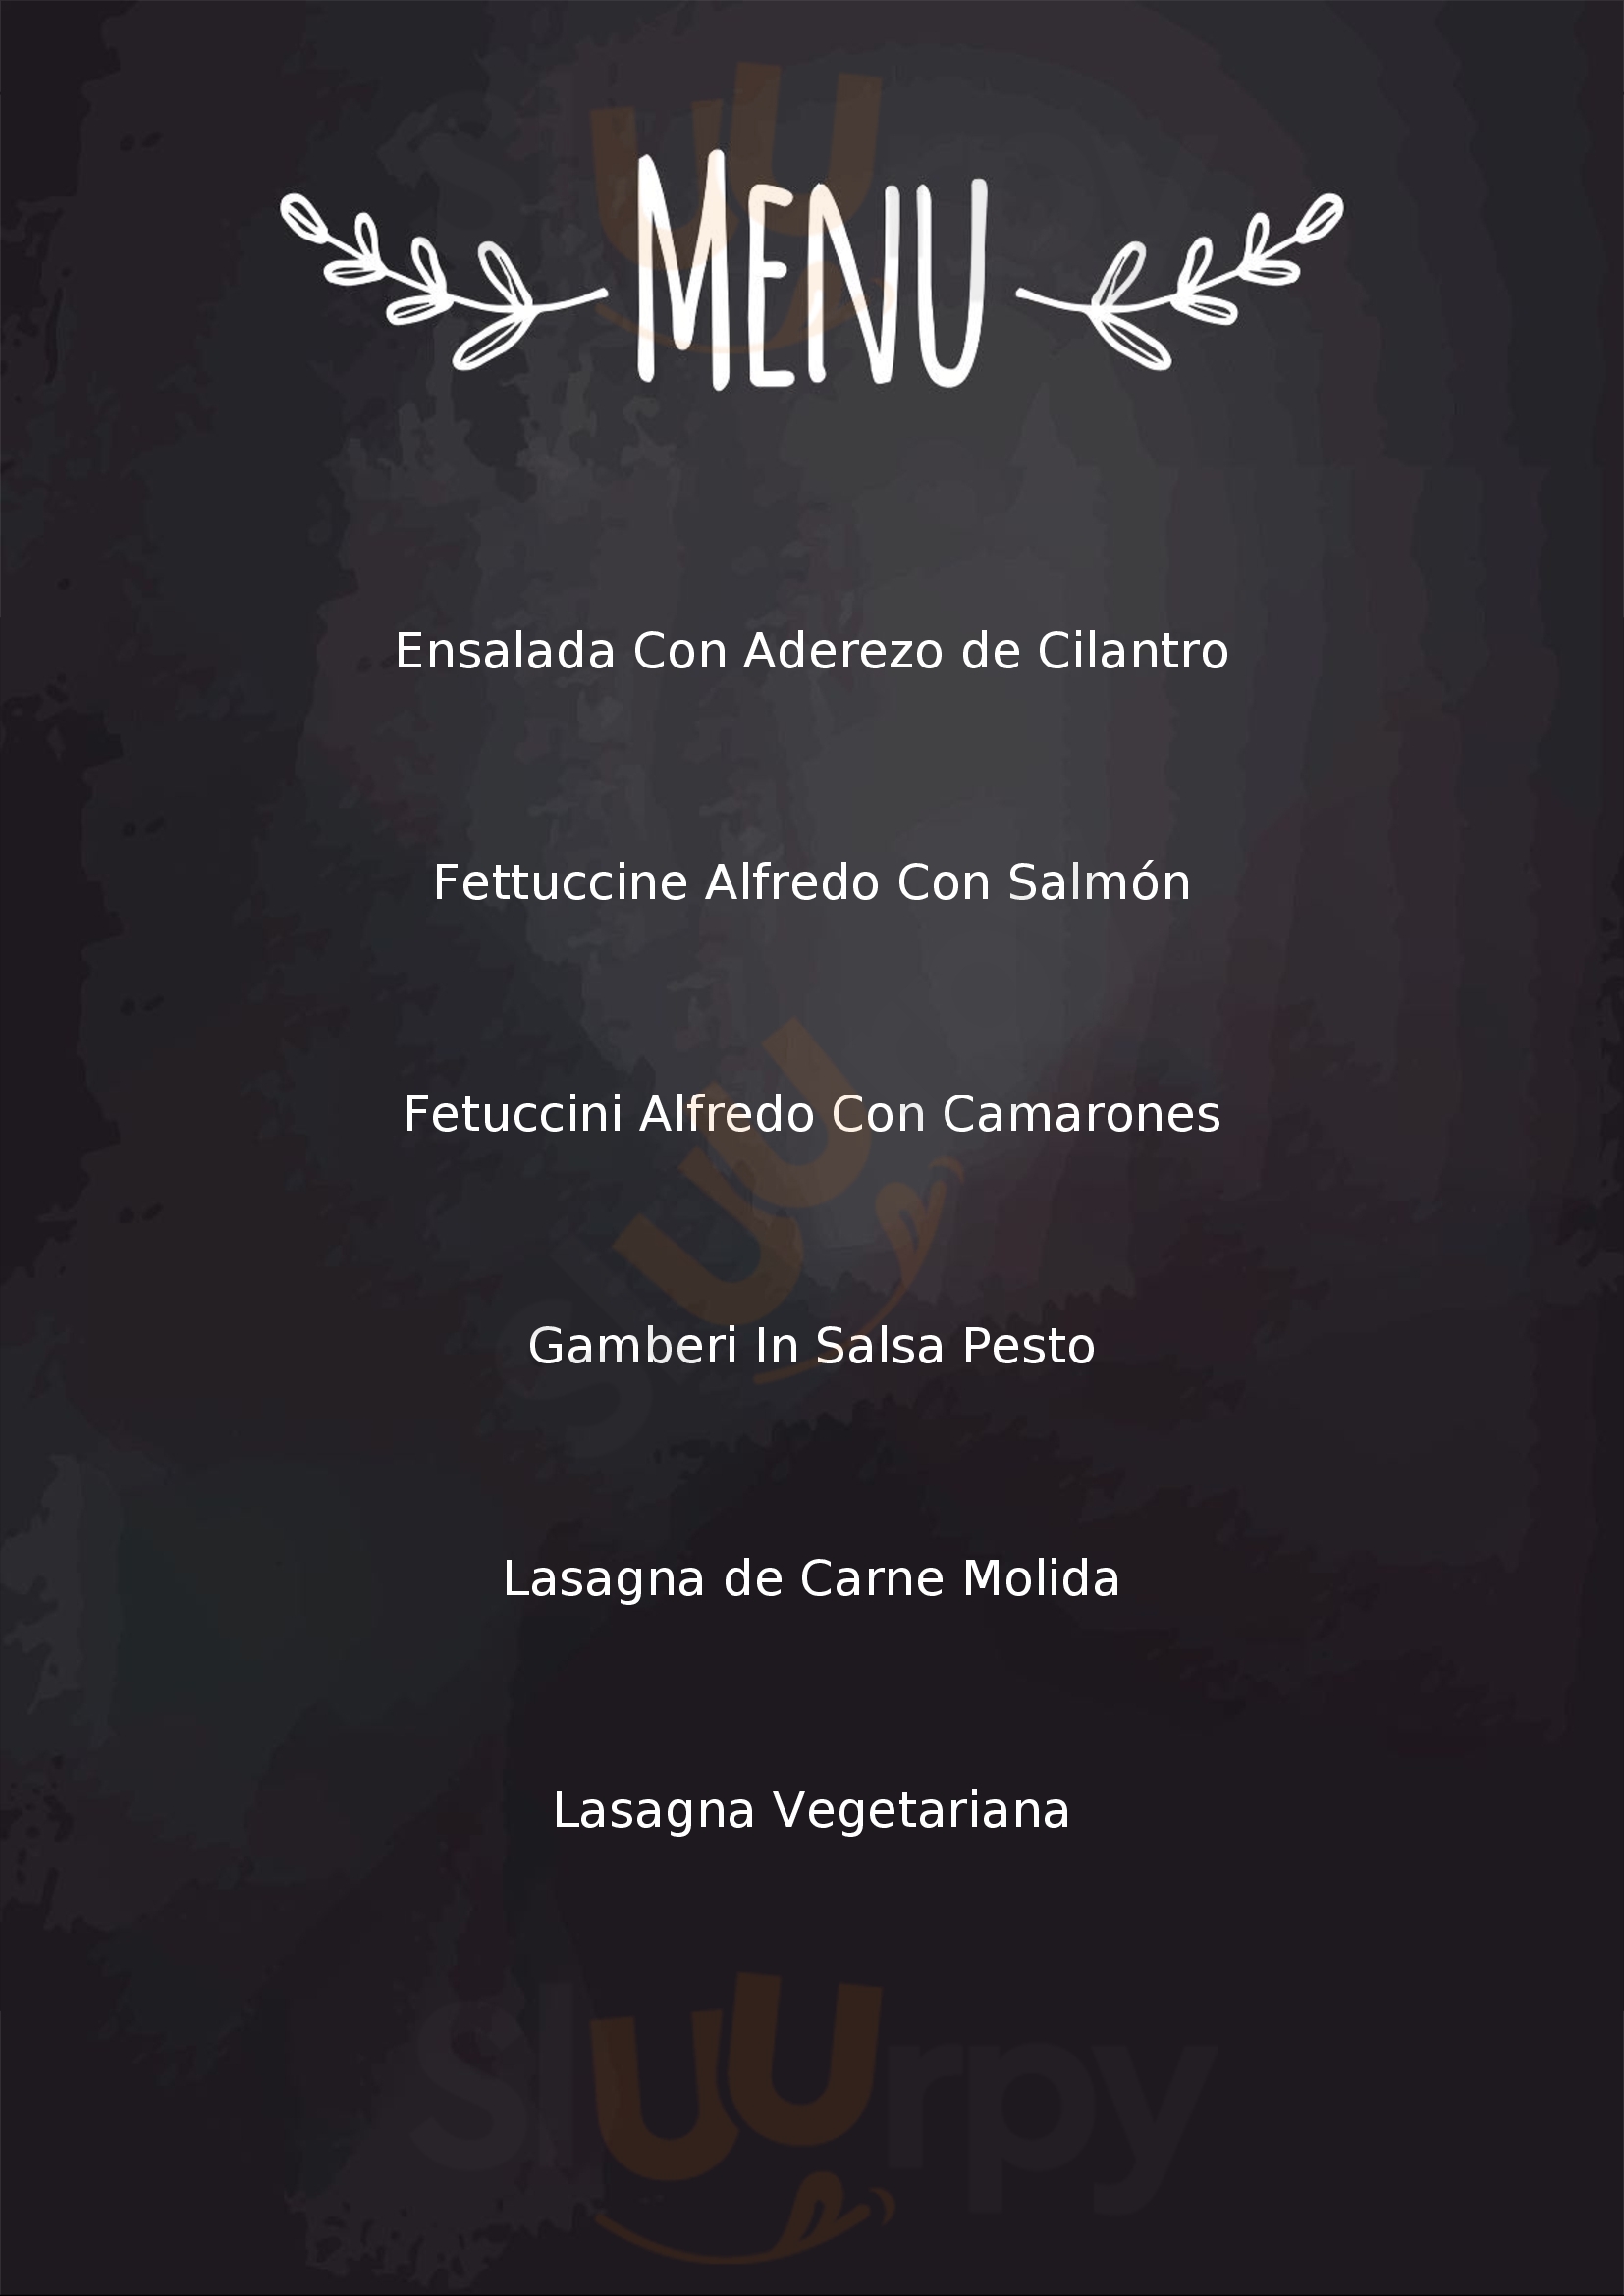 Cucina Italiana Da Pasquale Guadalajara Menu - 1